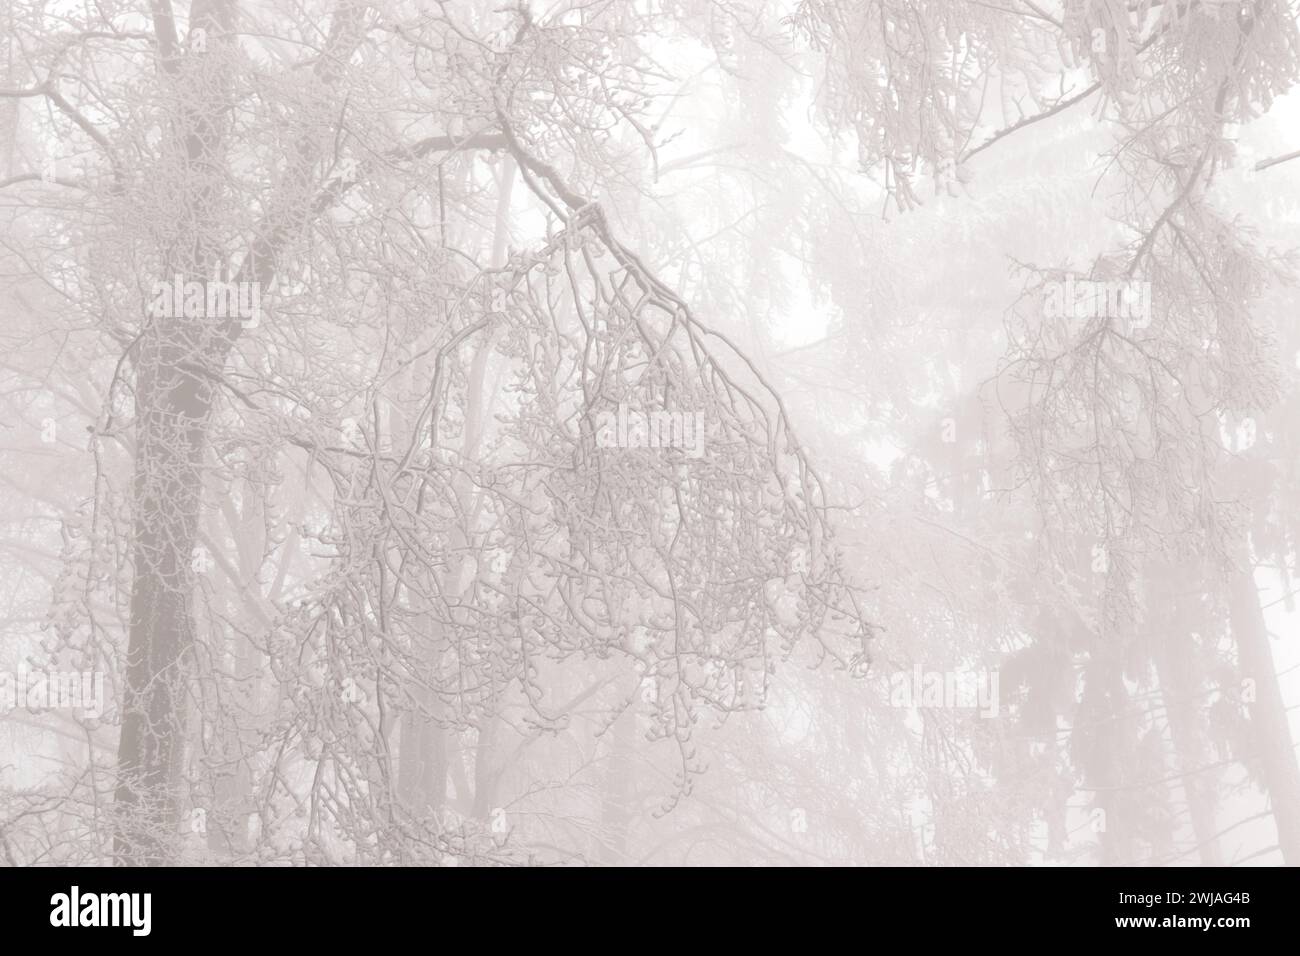 Rauhreif und Nebel im Wald Stockfoto